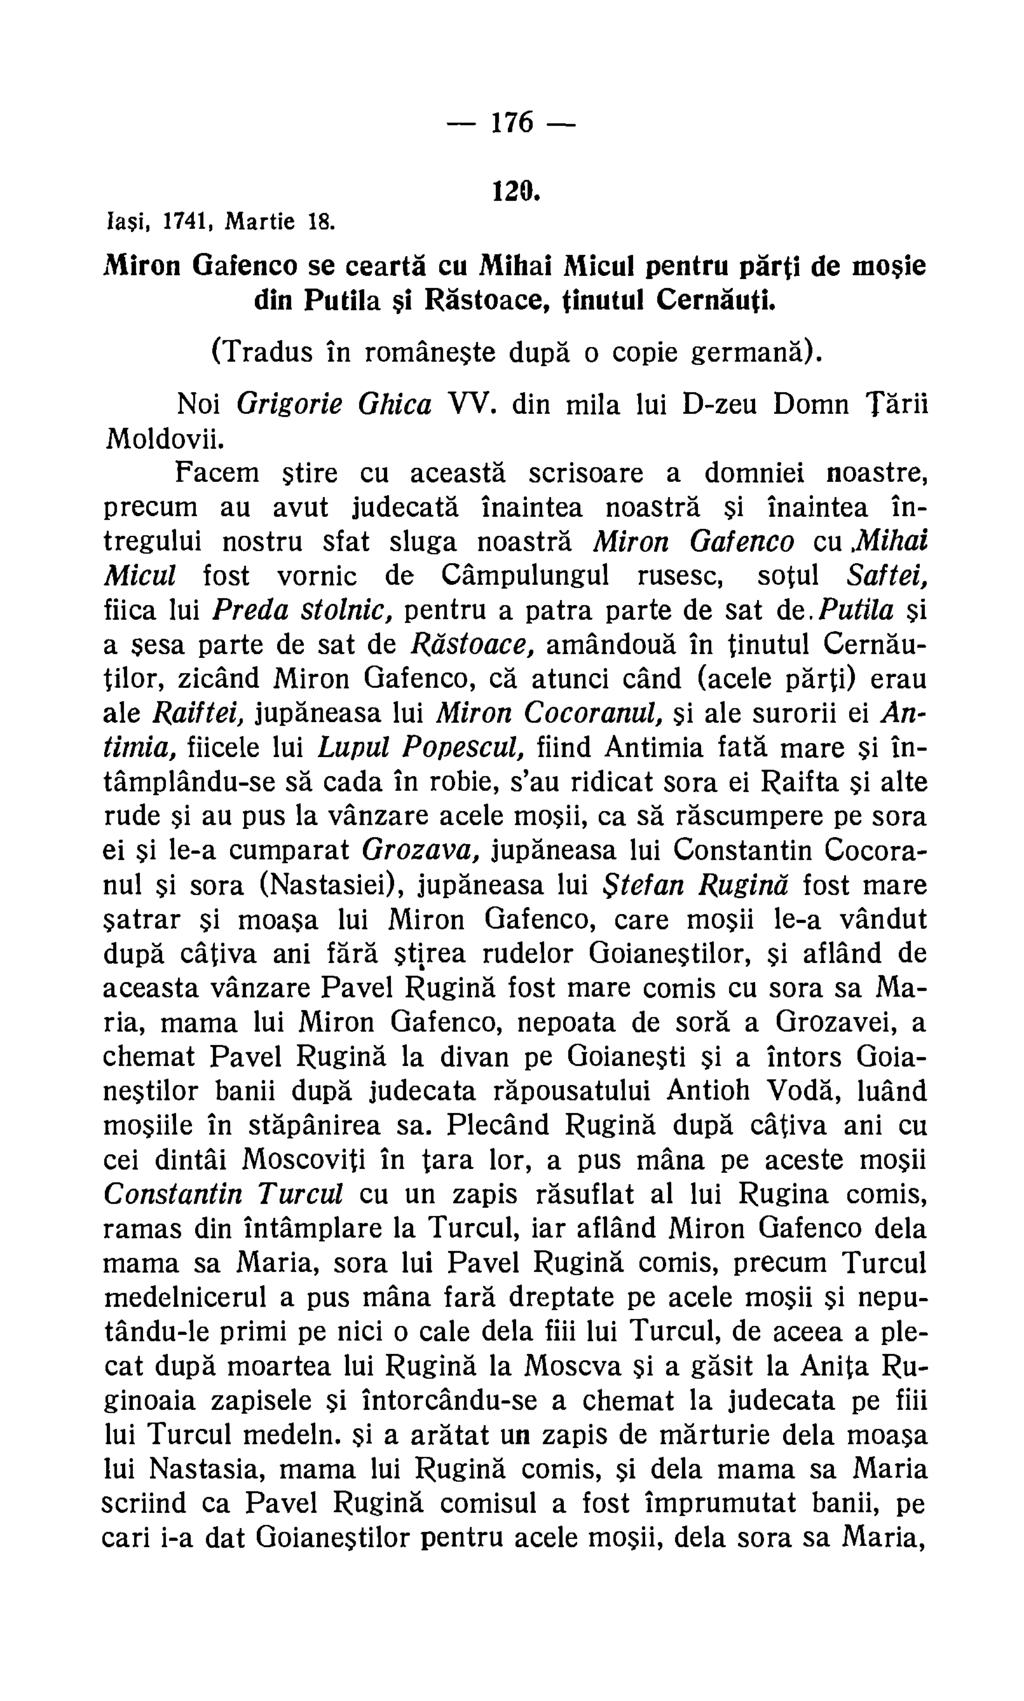 176 120. Iasi, 1741, Martie 18. Miron Gafenco se cearta cu Mihai Micul pentru parti de mosie din Putila si Rastoace, finutul Cernauti. (Tradus in romaneste dupa o copie germana).